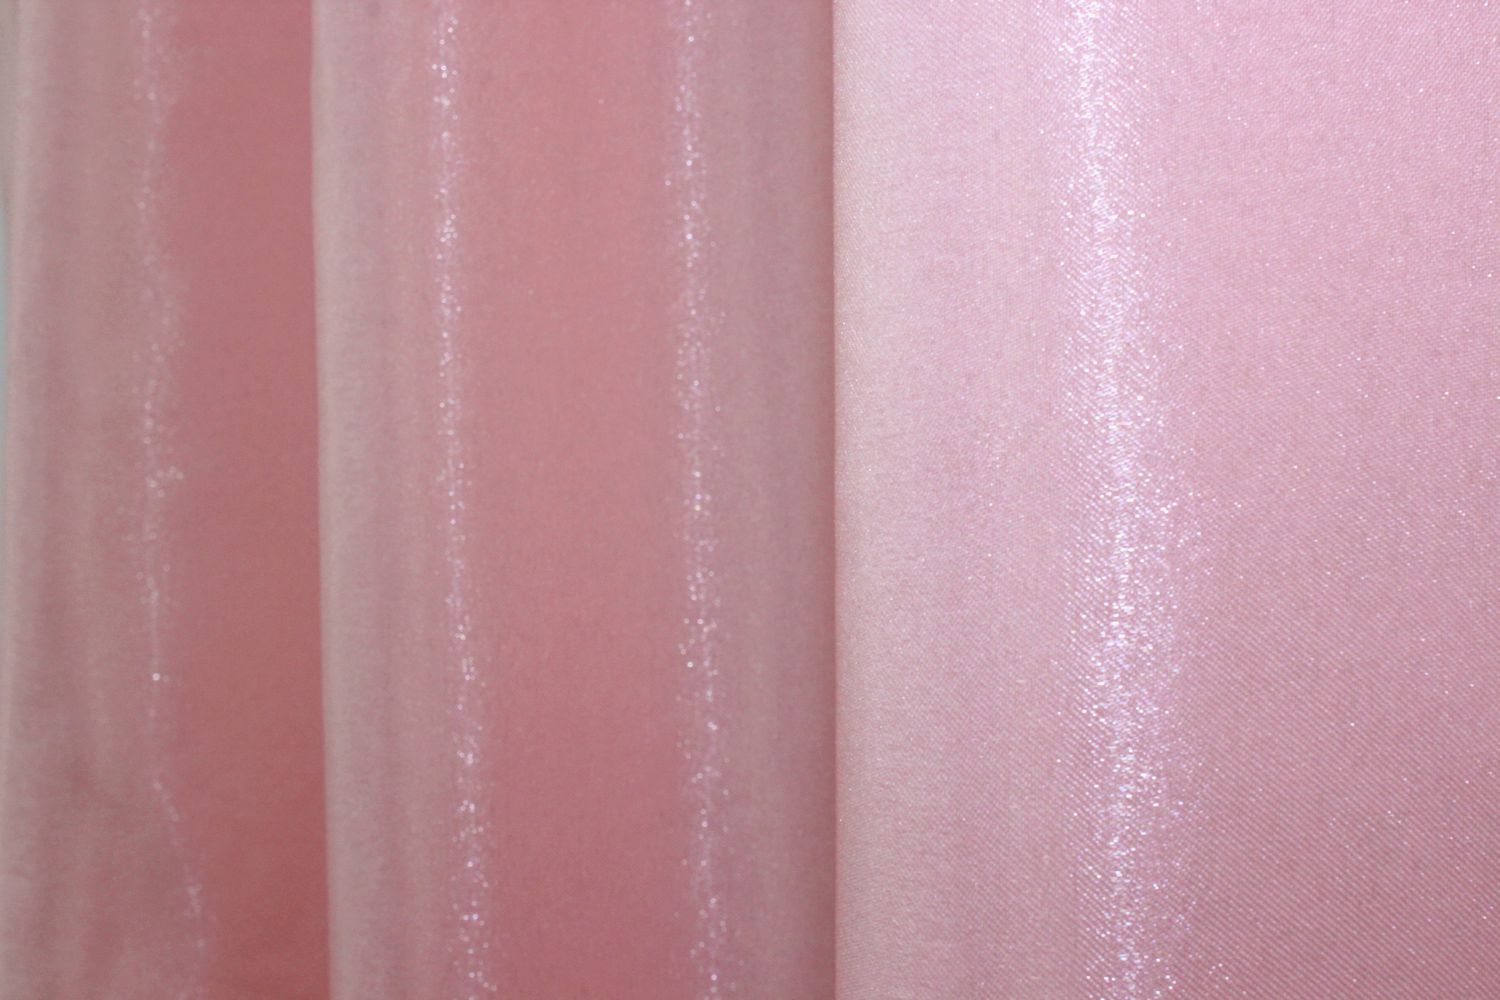 Атласные шторы Монорей, цвет розовый 972ш, Розовый, Комплект штор (2шт. 1,0х2,7м.), Классические, Длинные, 1 м., 2,7 м., 100, 270, 1 - 2 м., В комплекте 2 шт., Тесьма